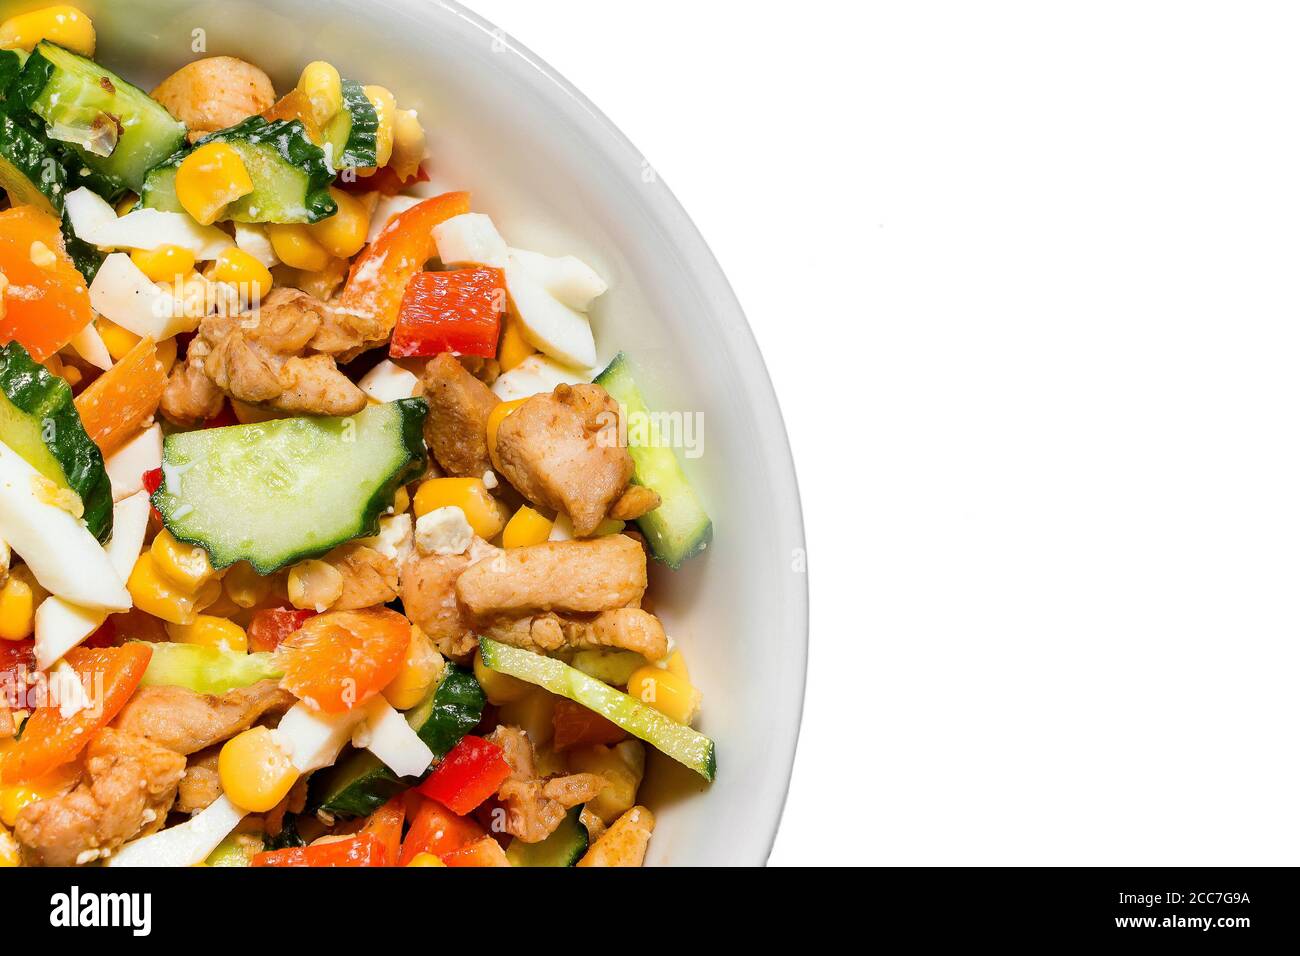 Salade de légumes dans une assiette blanche isolée sur un fond blanc.  Cuisson d'une délicieuse salade diététique. Portion d'une assiette avec de  délicieux légumes savoureux Photo Stock - Alamy